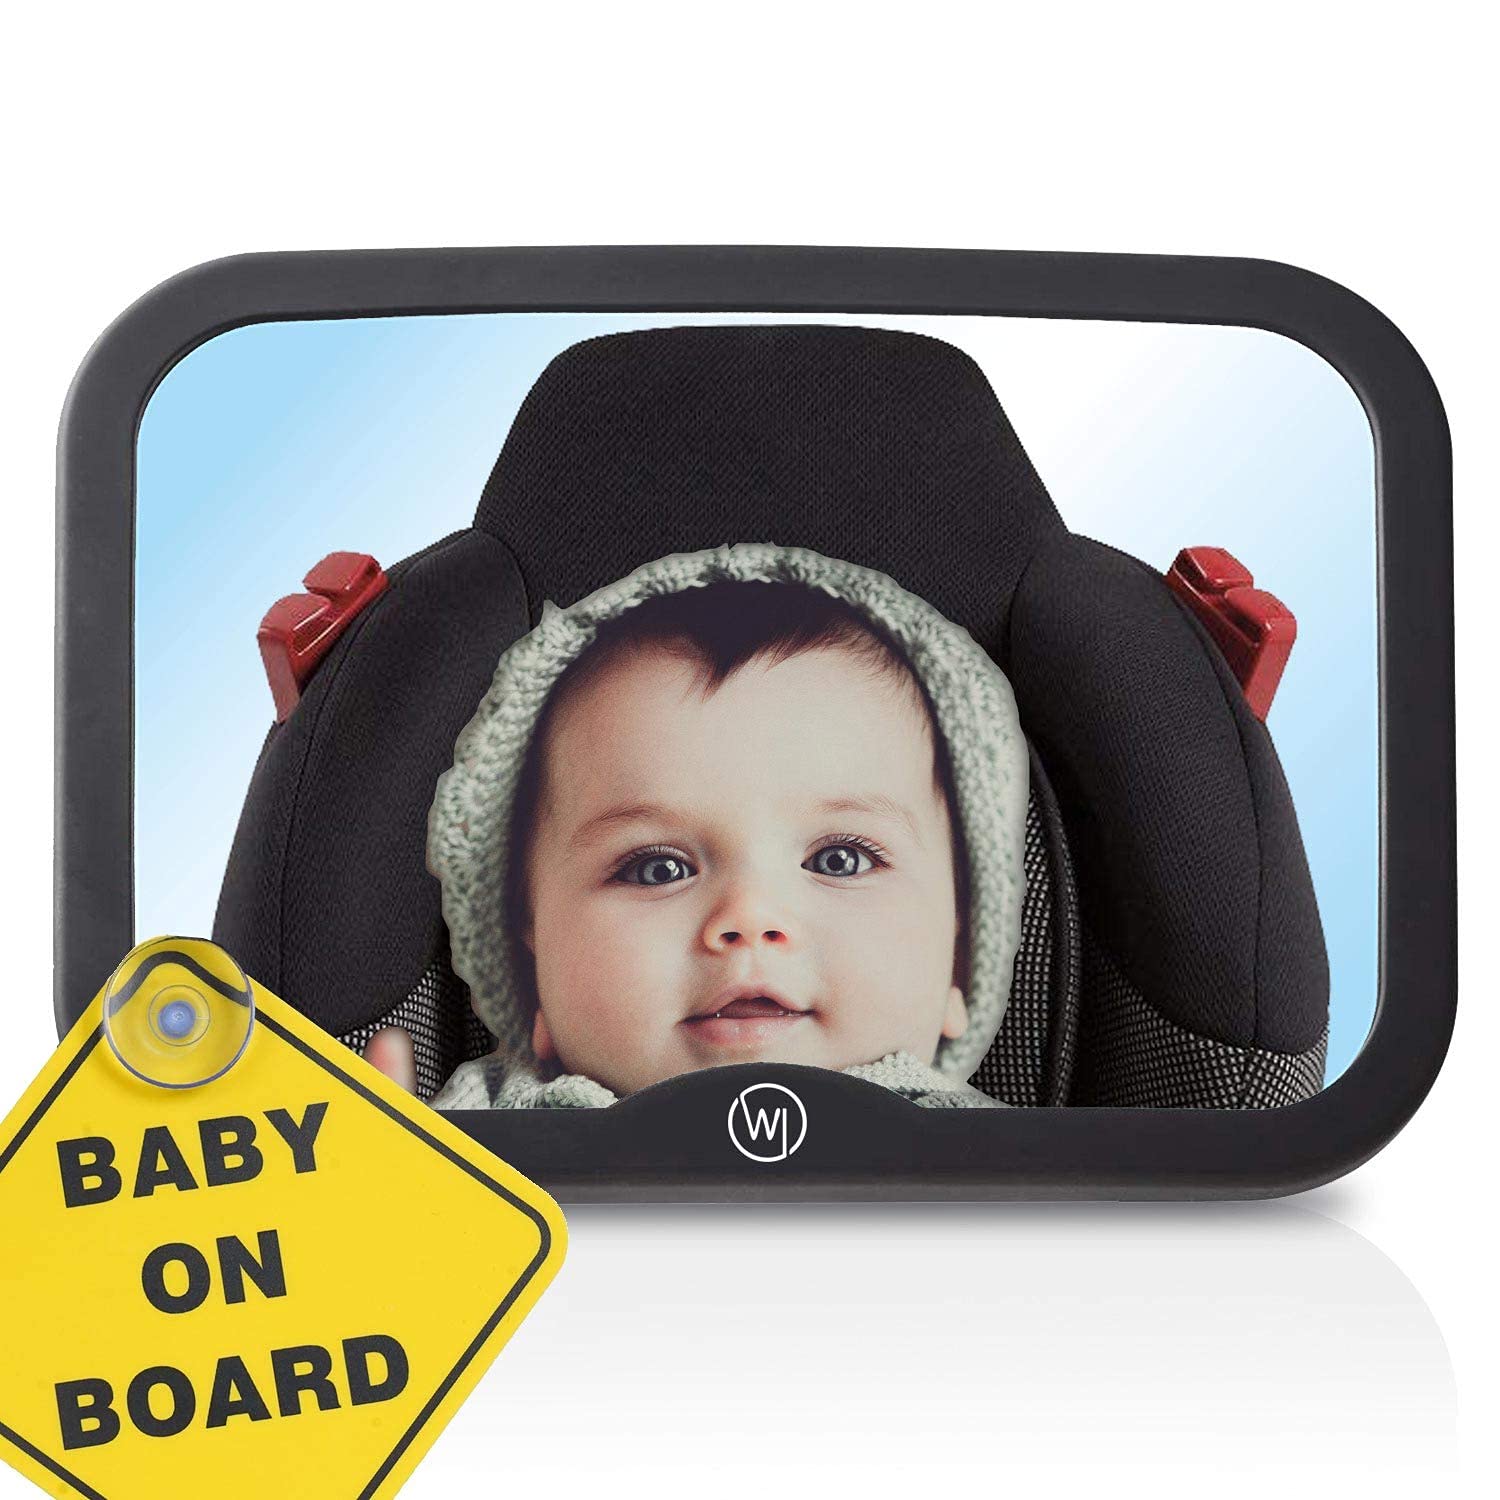 Baby Autospiegel für Kopfstütze | Rückspiegel bruchsicher & extra groß | Rücksitzspiegel für Babys | Baby Erstausstattung Auto Zubehör KFZ Spiegel (Baby on Board Schild, 360° schwenkbar) von Wicked Chili